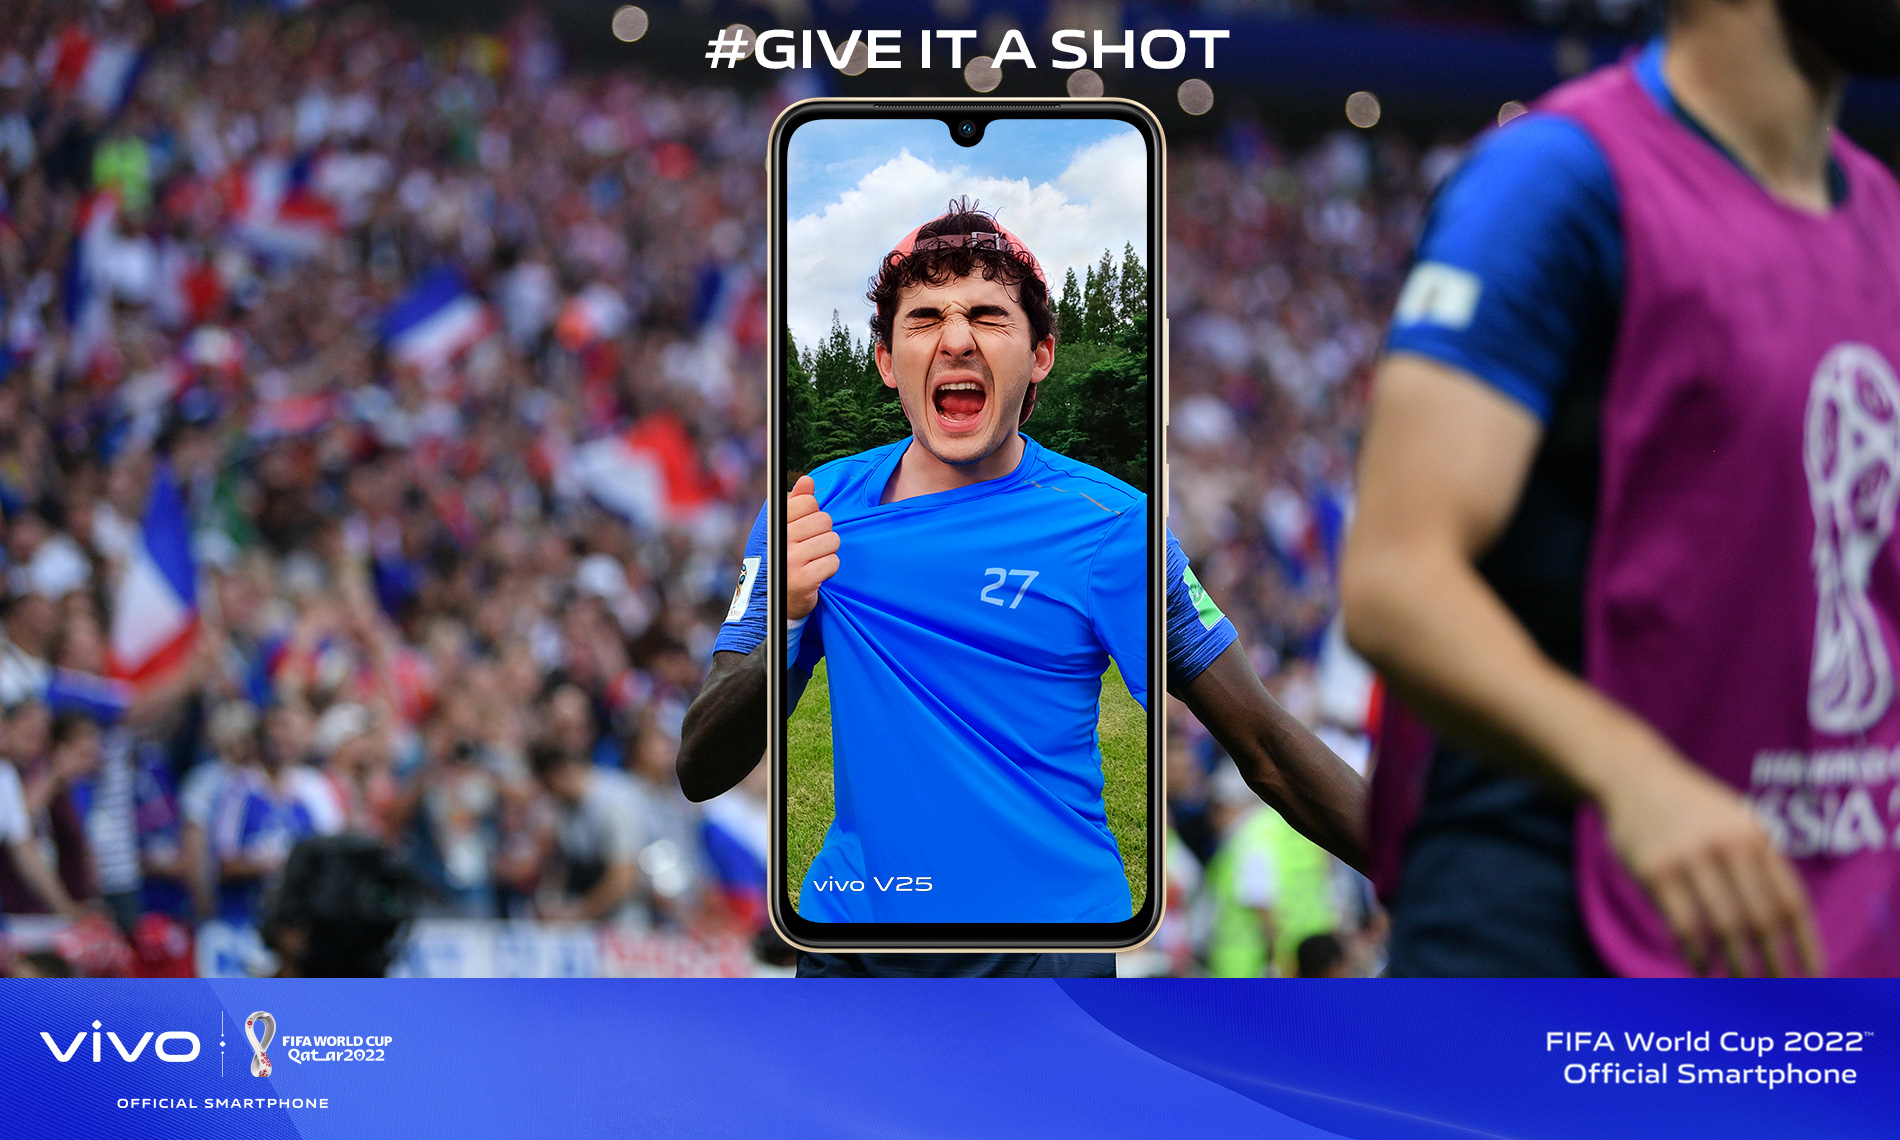 فيفو تجمع عشاق كرة القدم عبر حملة سجّل أهدافك "Give it a shot" خلال كأس العالم FIFA قطر 2022